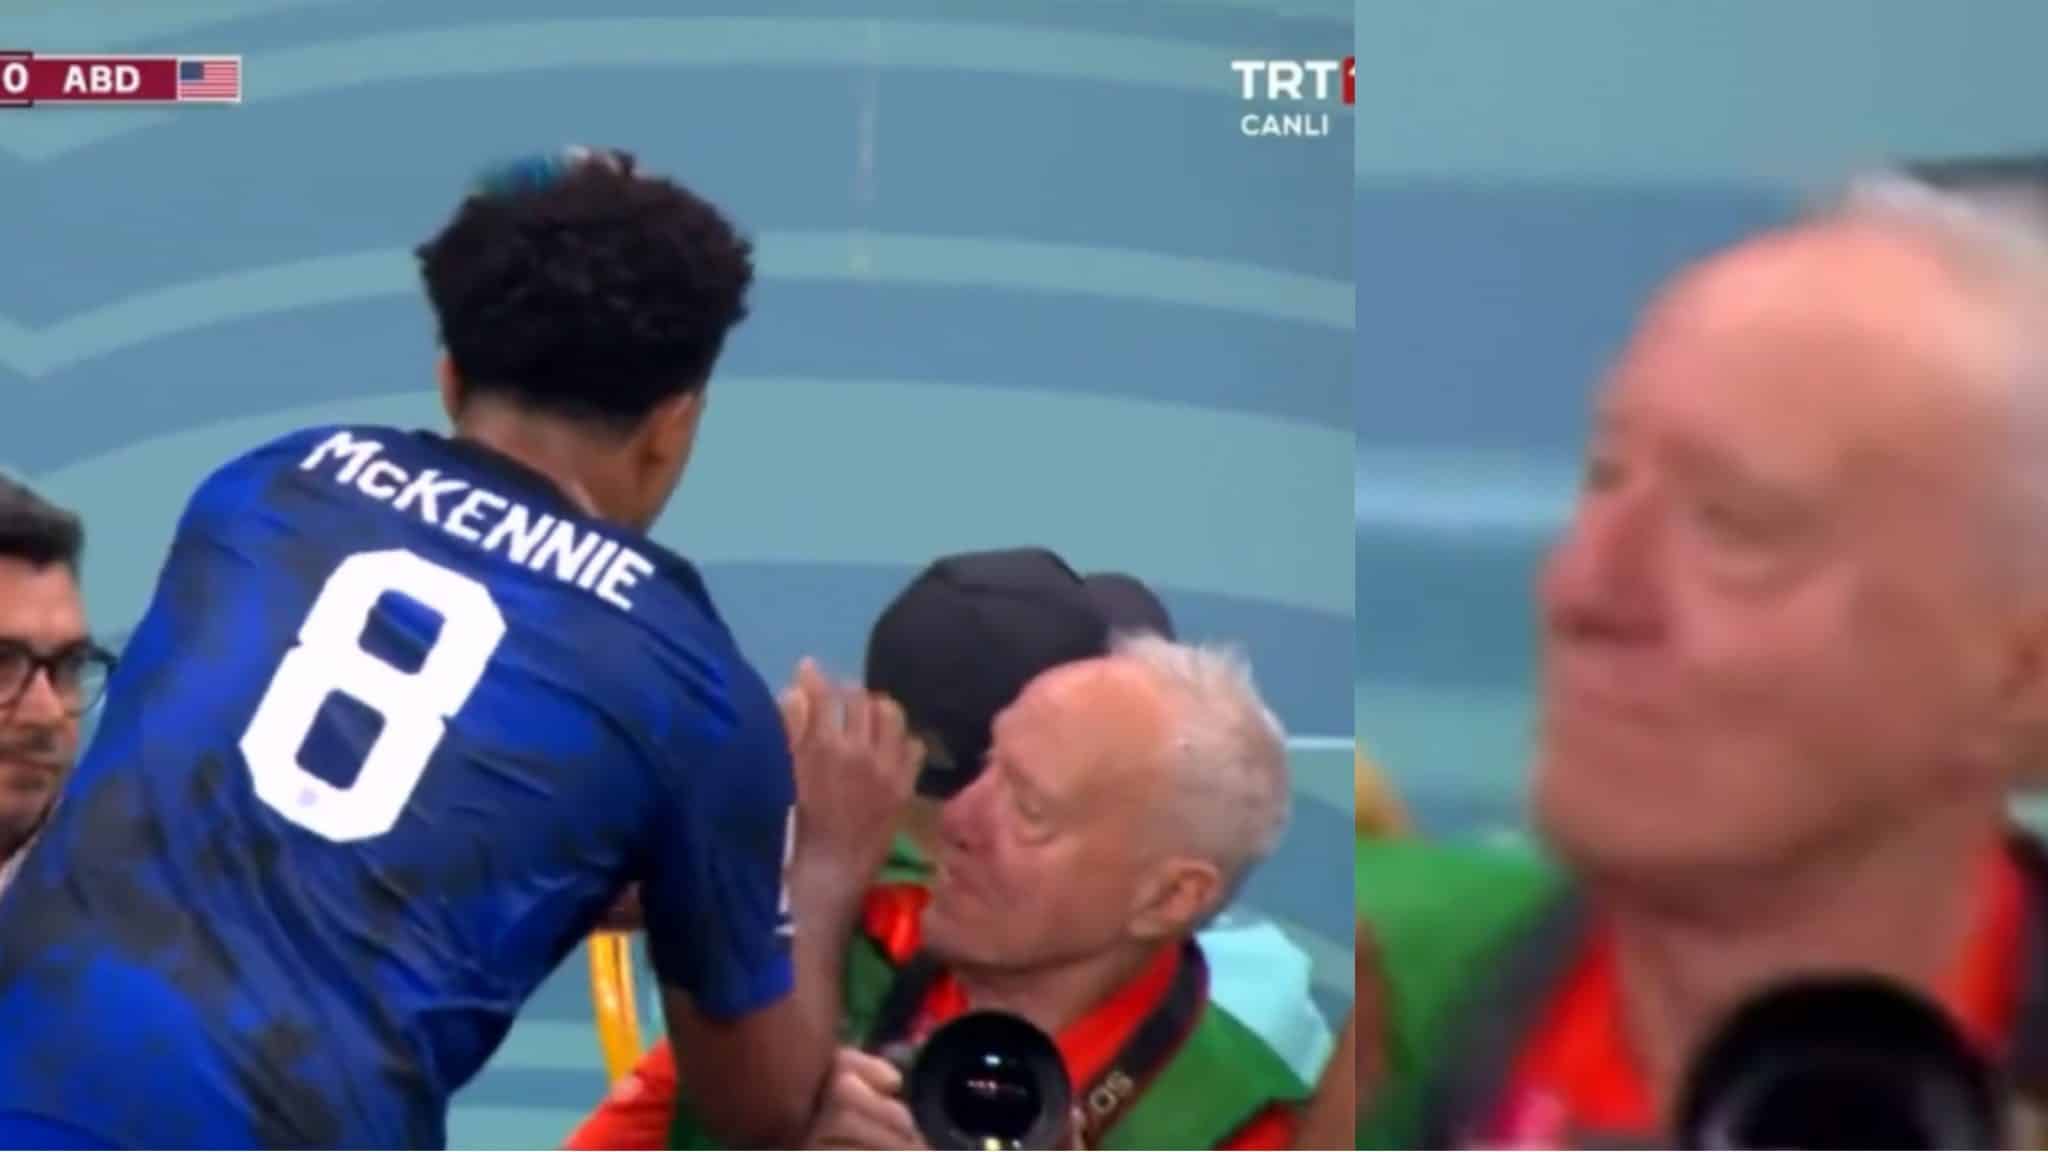 Le geste honteux de Mckennie, le joueur de la Juventus a les mains moites et les sèche sur le photographe en marge